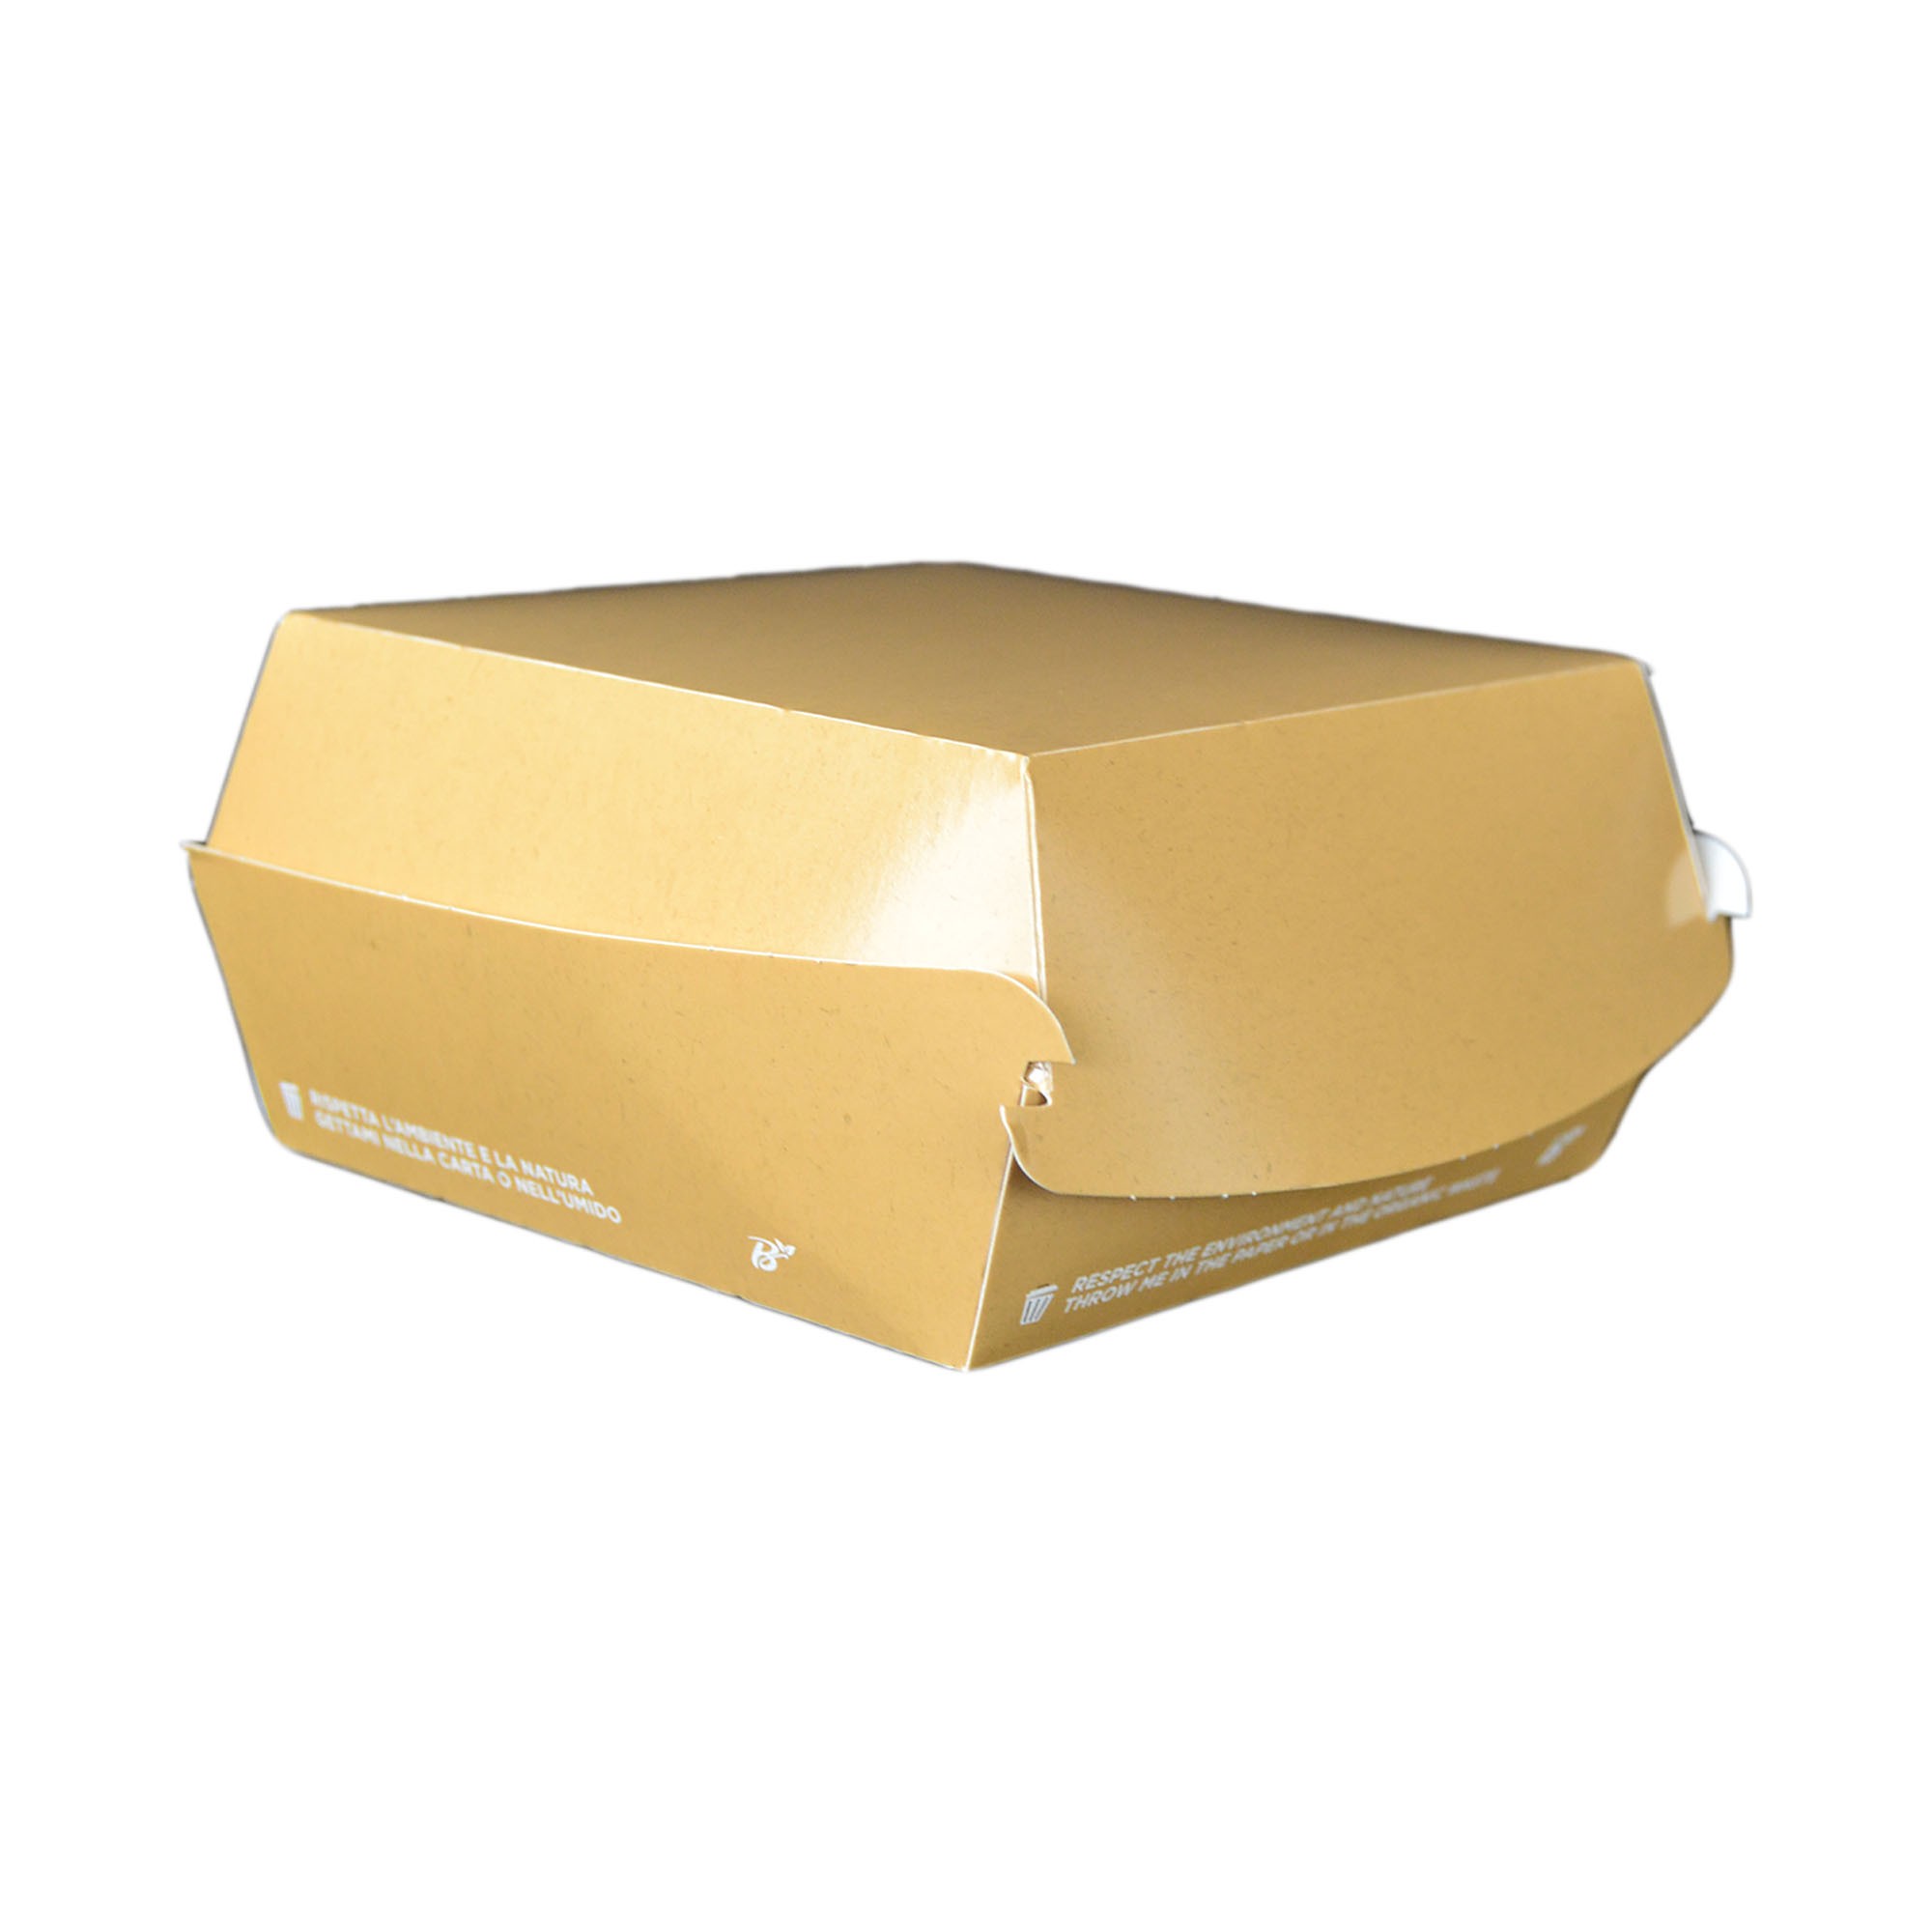 PZ 50 Box panino medio 12 x 12 x 7 cm in cartoncino color avana ideale per asporto di panini e fritti